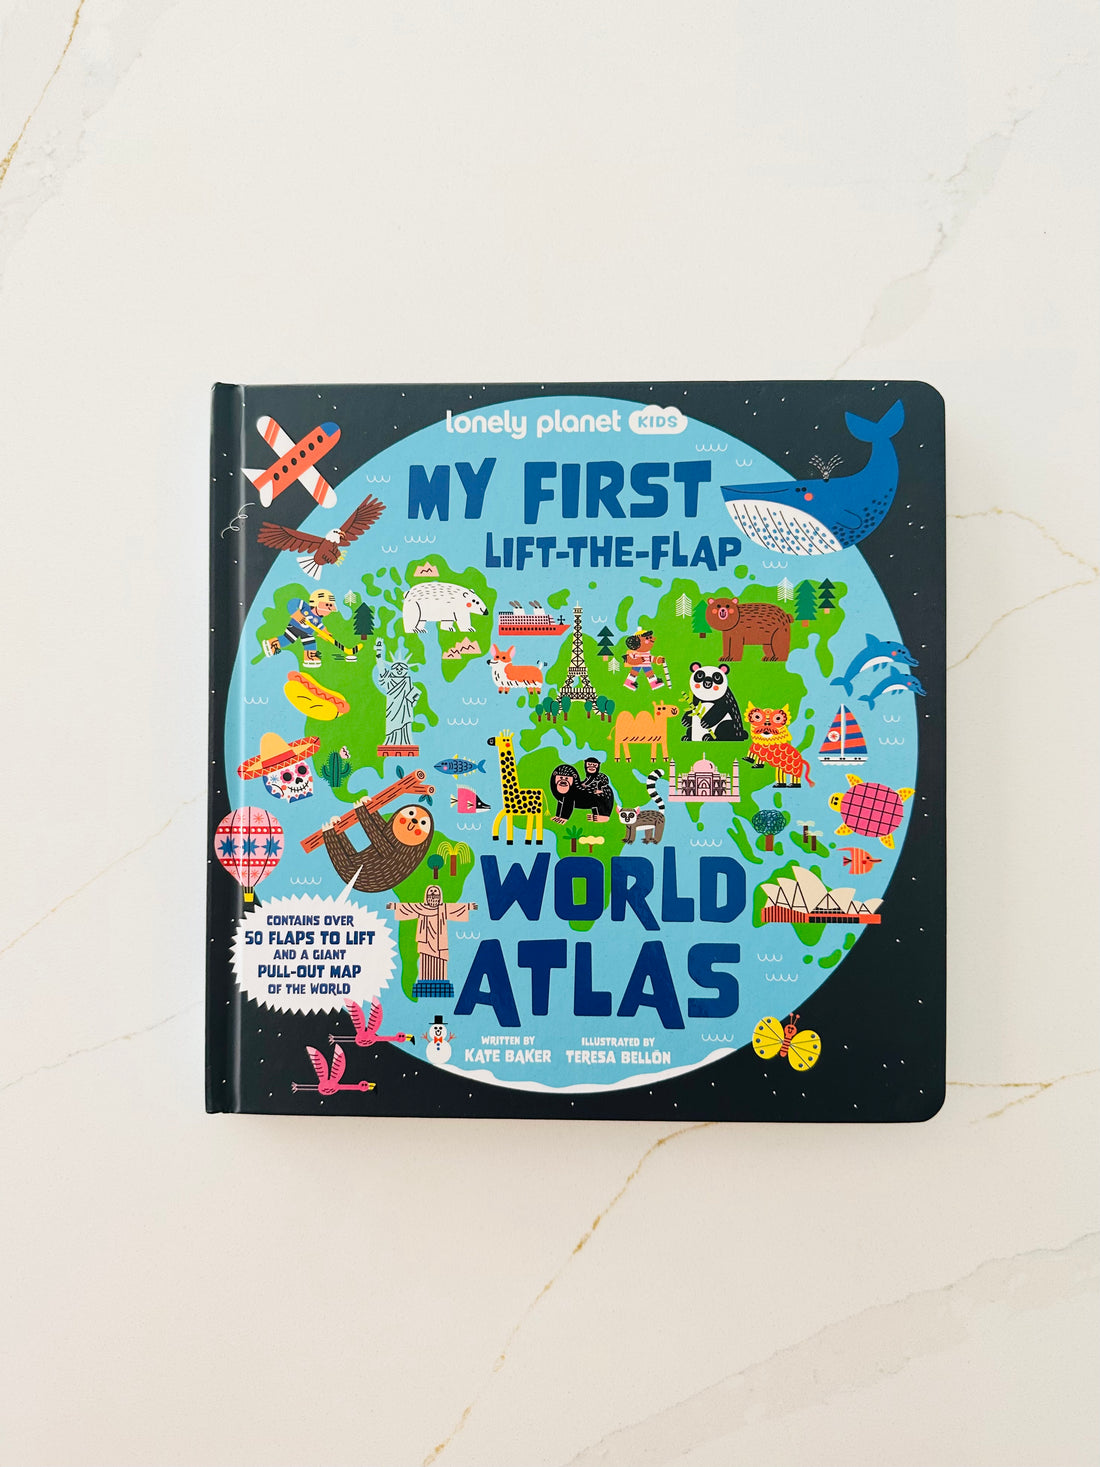 לונלי פלאנט ילדים: האטלס העולמי הראשון שלי להרים את הדש